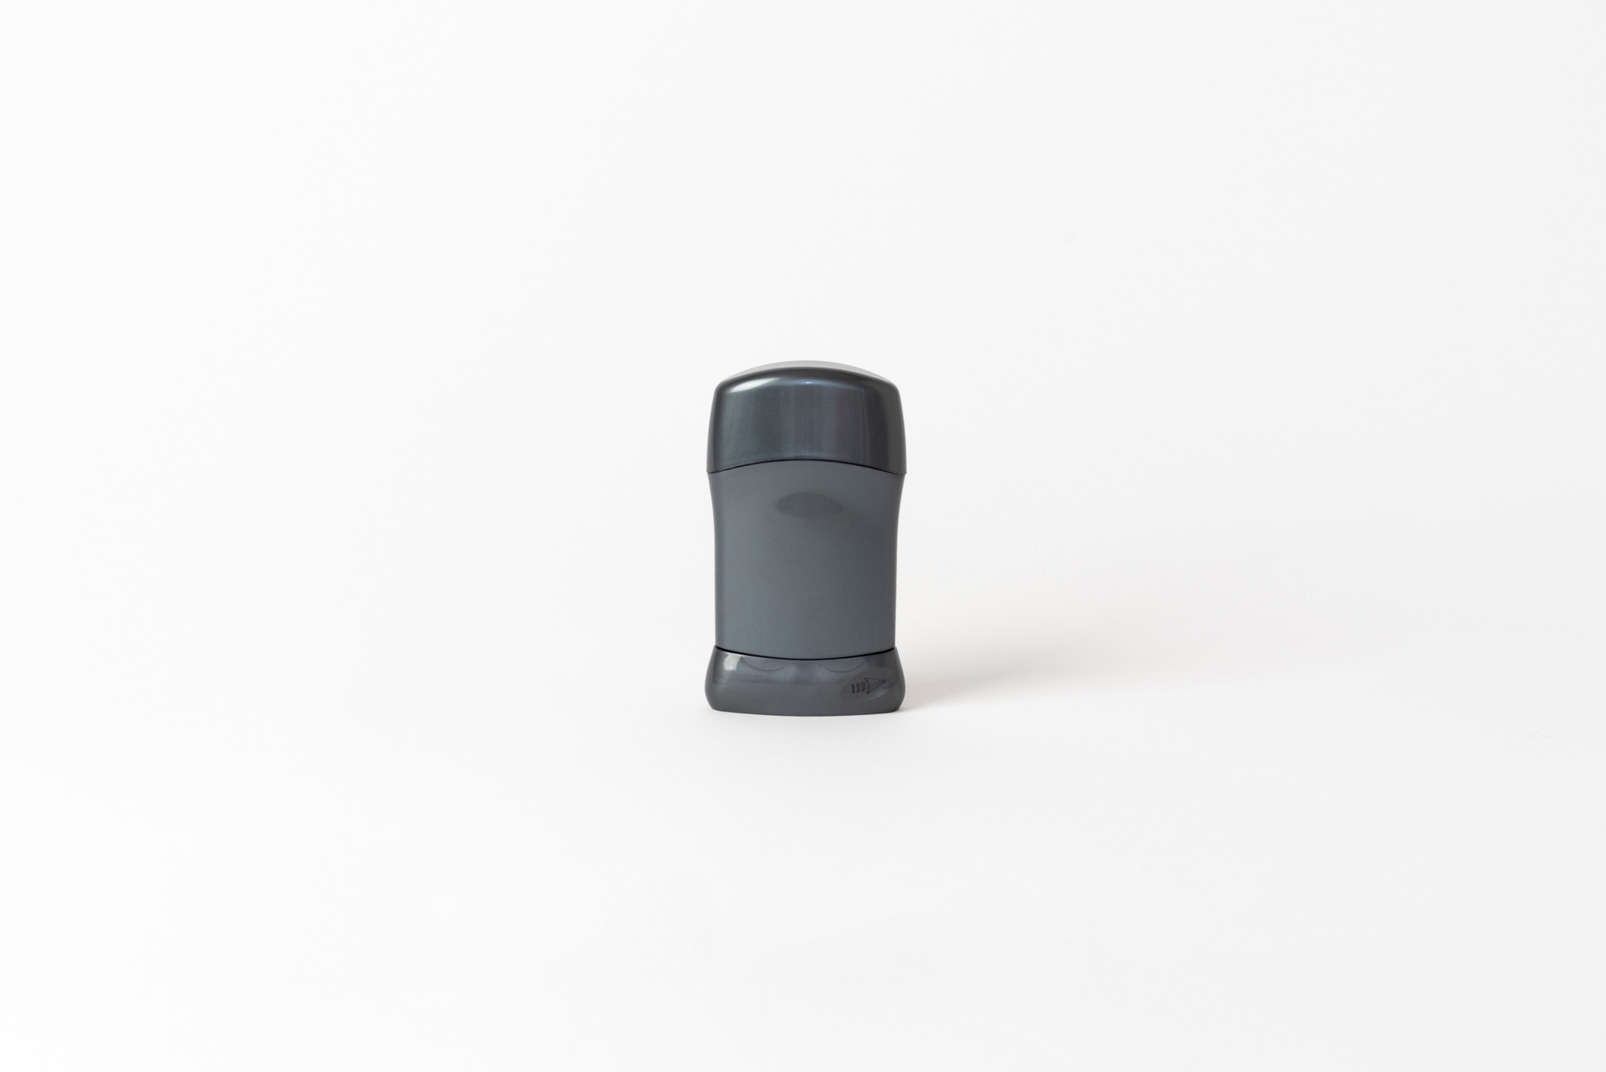 Black plastic deodorant container